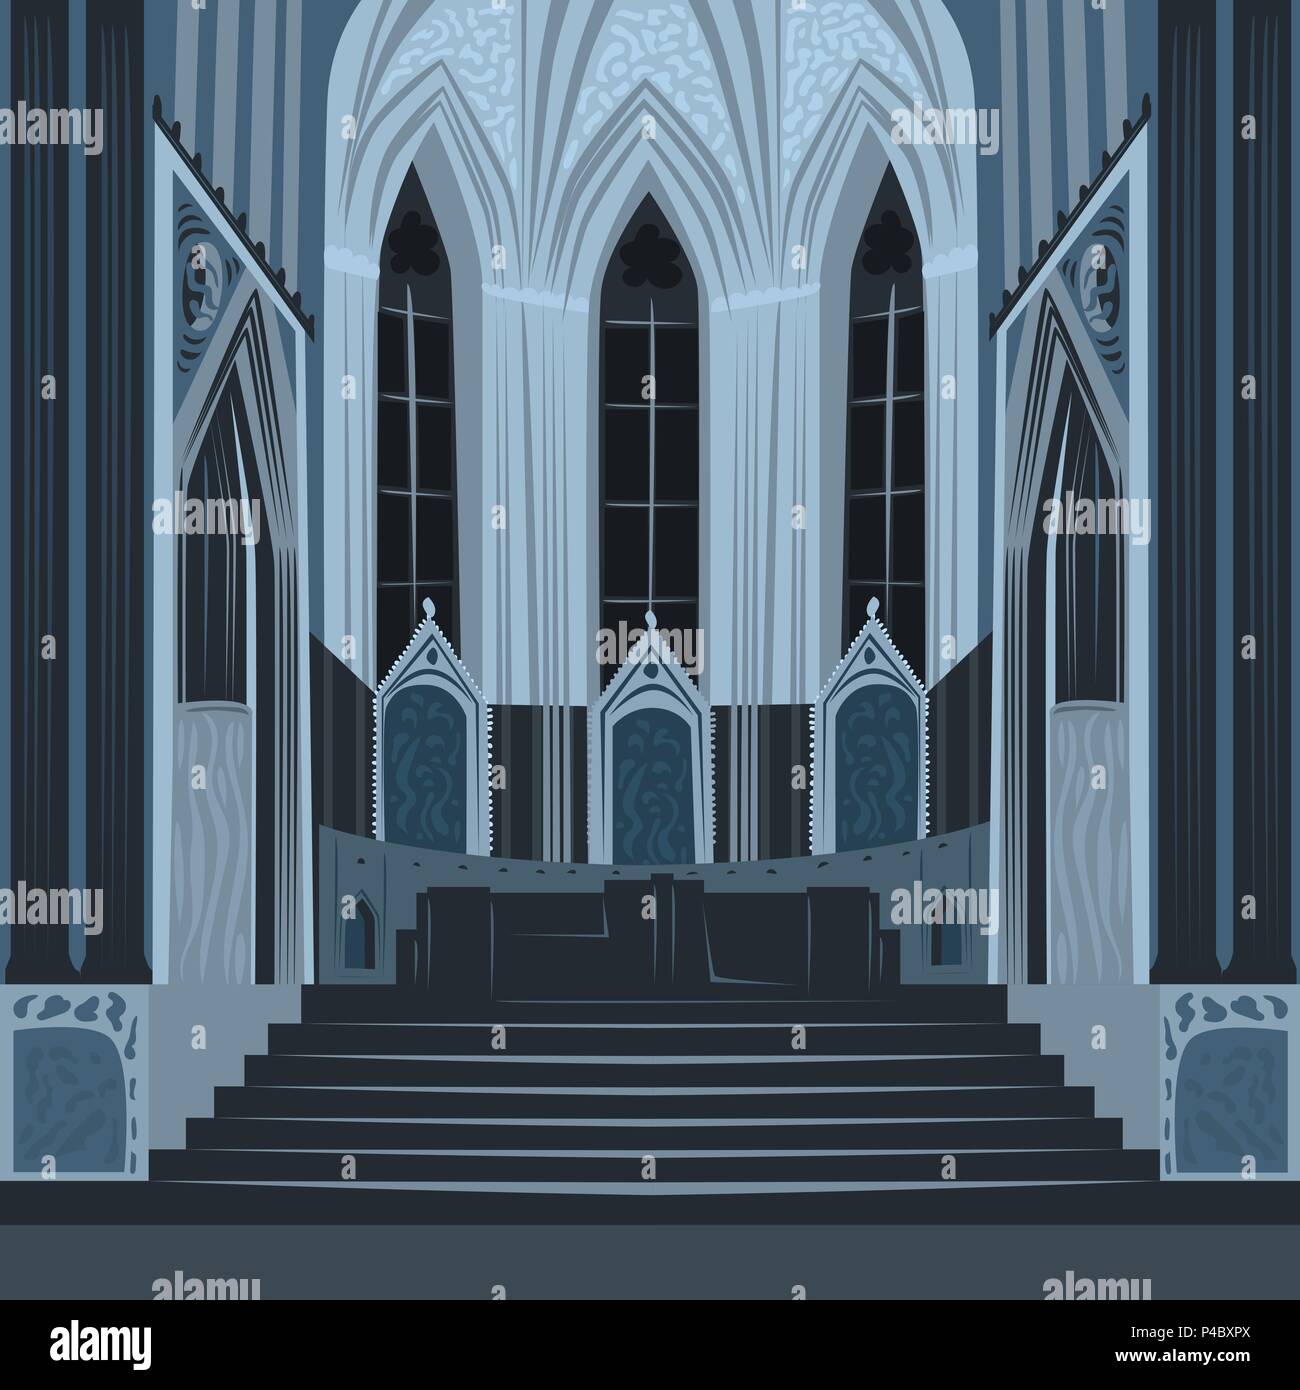 Vue spectaculaire sur l'autel de la nef à l'intérieur de l'église cathédrale. Intérieur de la basilique catholique de nuit. Dessiner à main réaliste simplifiée style art bande dessinée Illustration de Vecteur